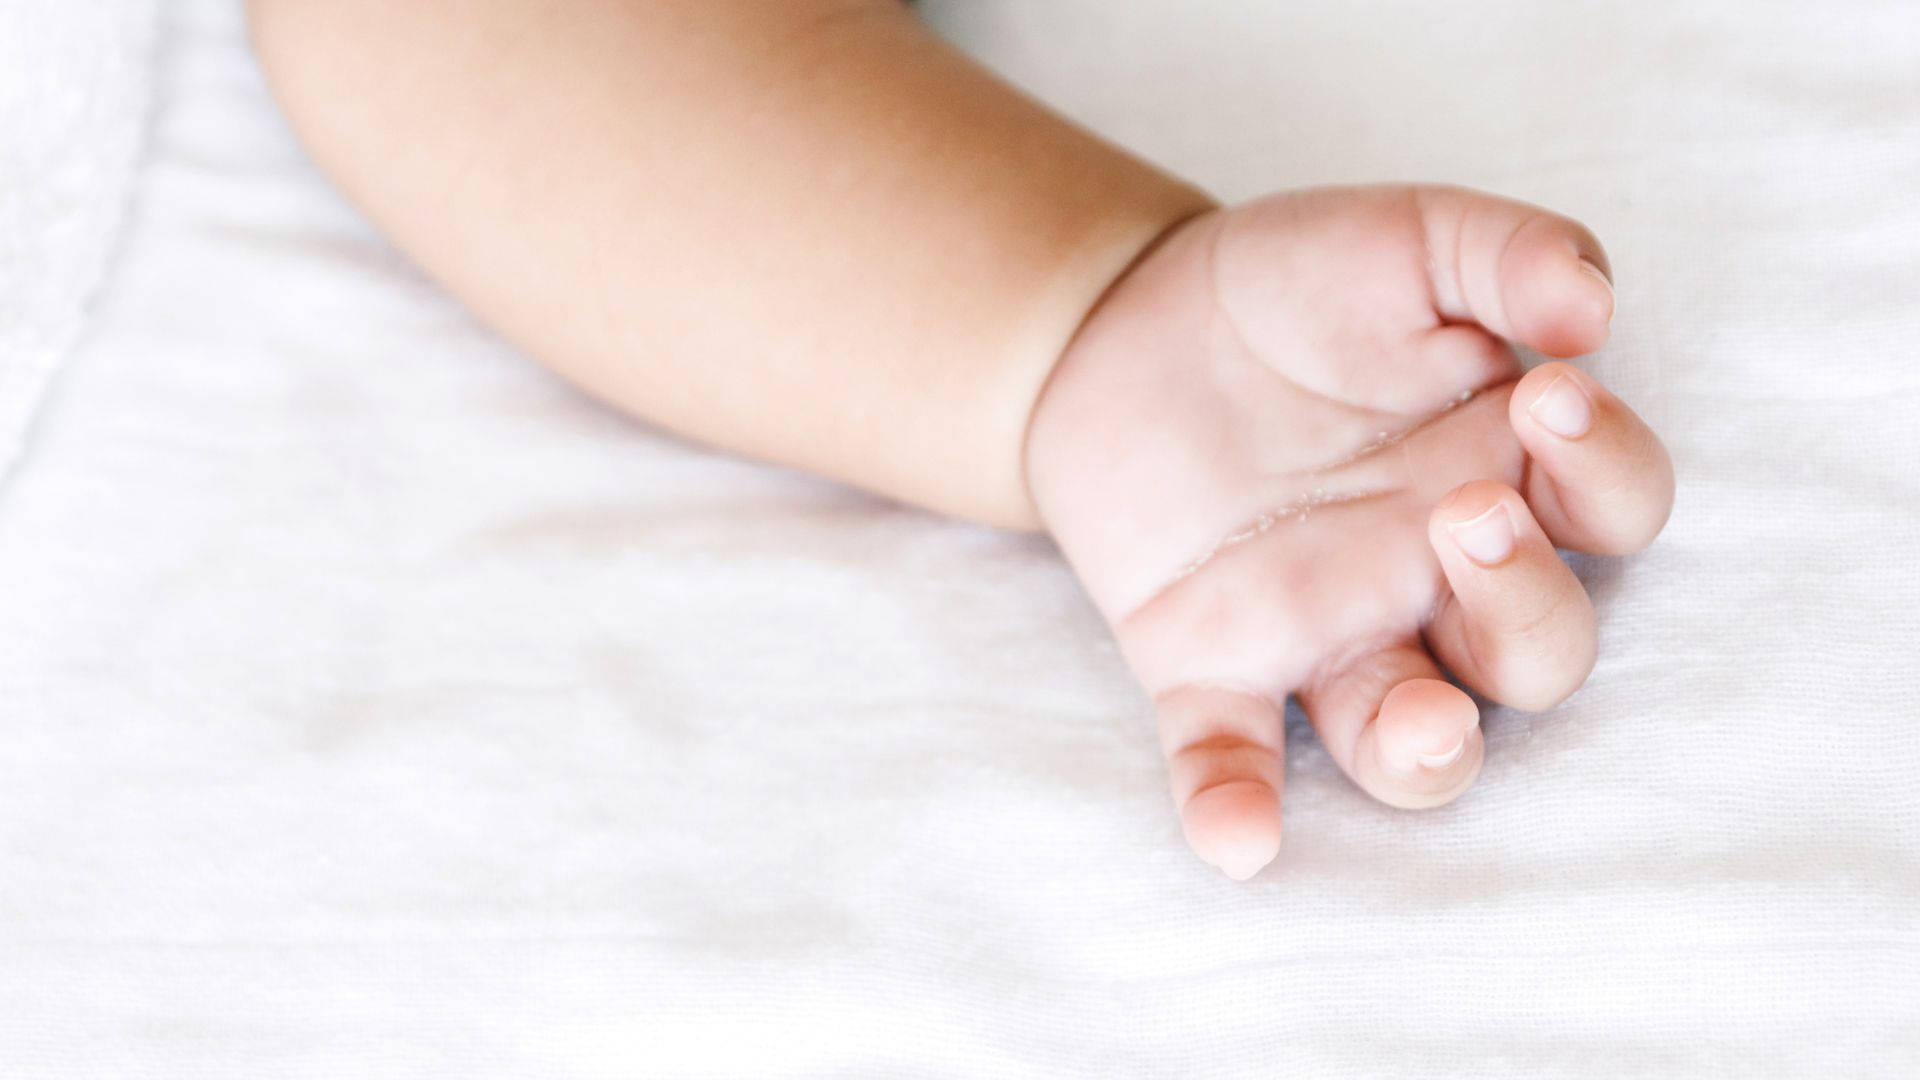 Baby Hand Resting On White Sheet Wallpaper